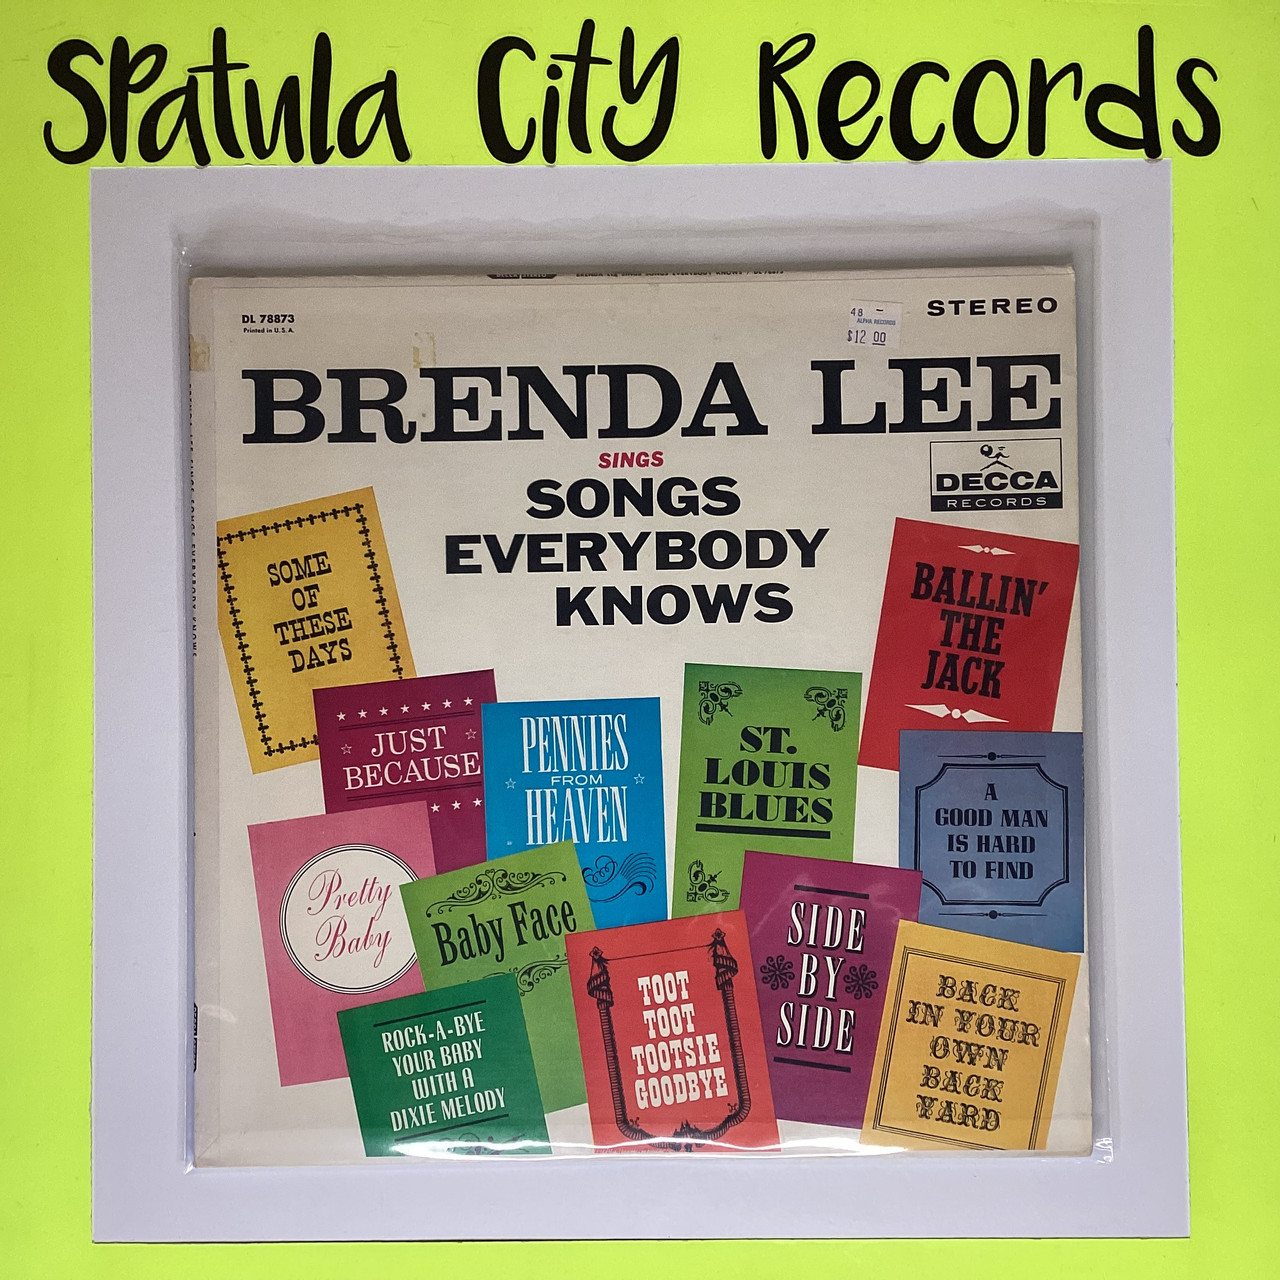 Brenda Lee - Brenda Lee Sings Songs Everybody Knows - vinyl record album LP